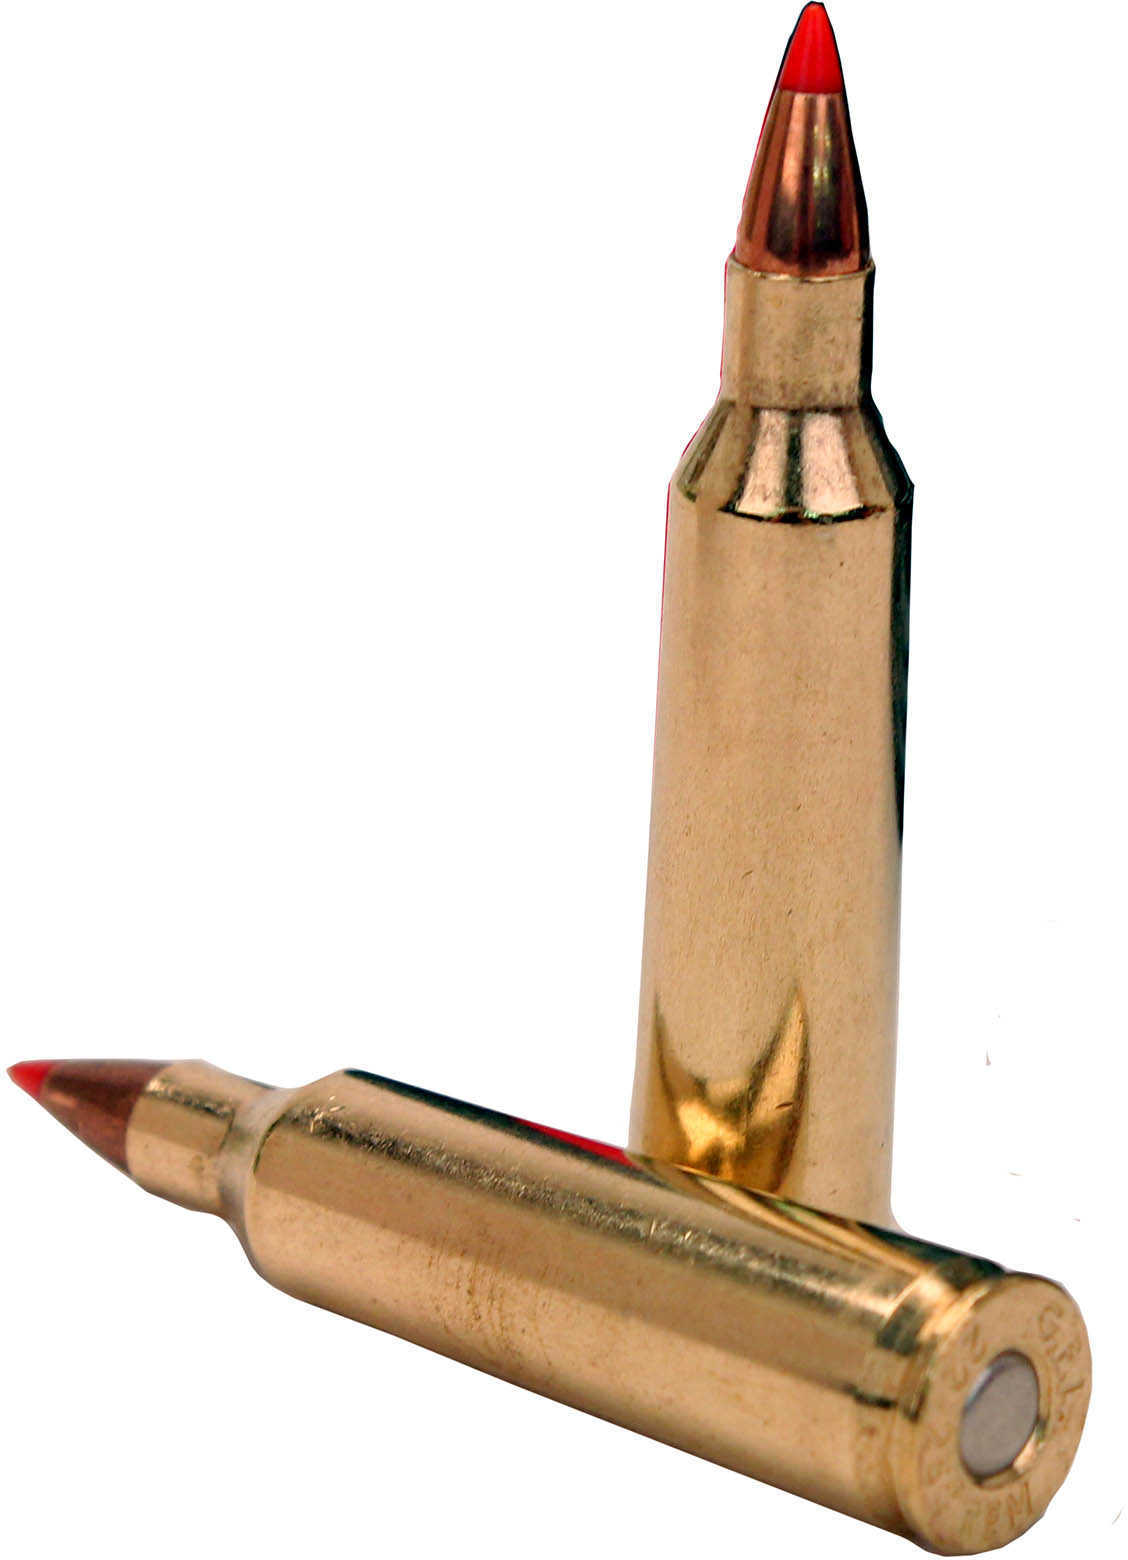 22-250 Rem 55 Grain Ballistic Tip 20 Rounds Fiocchi Ammunition Remington